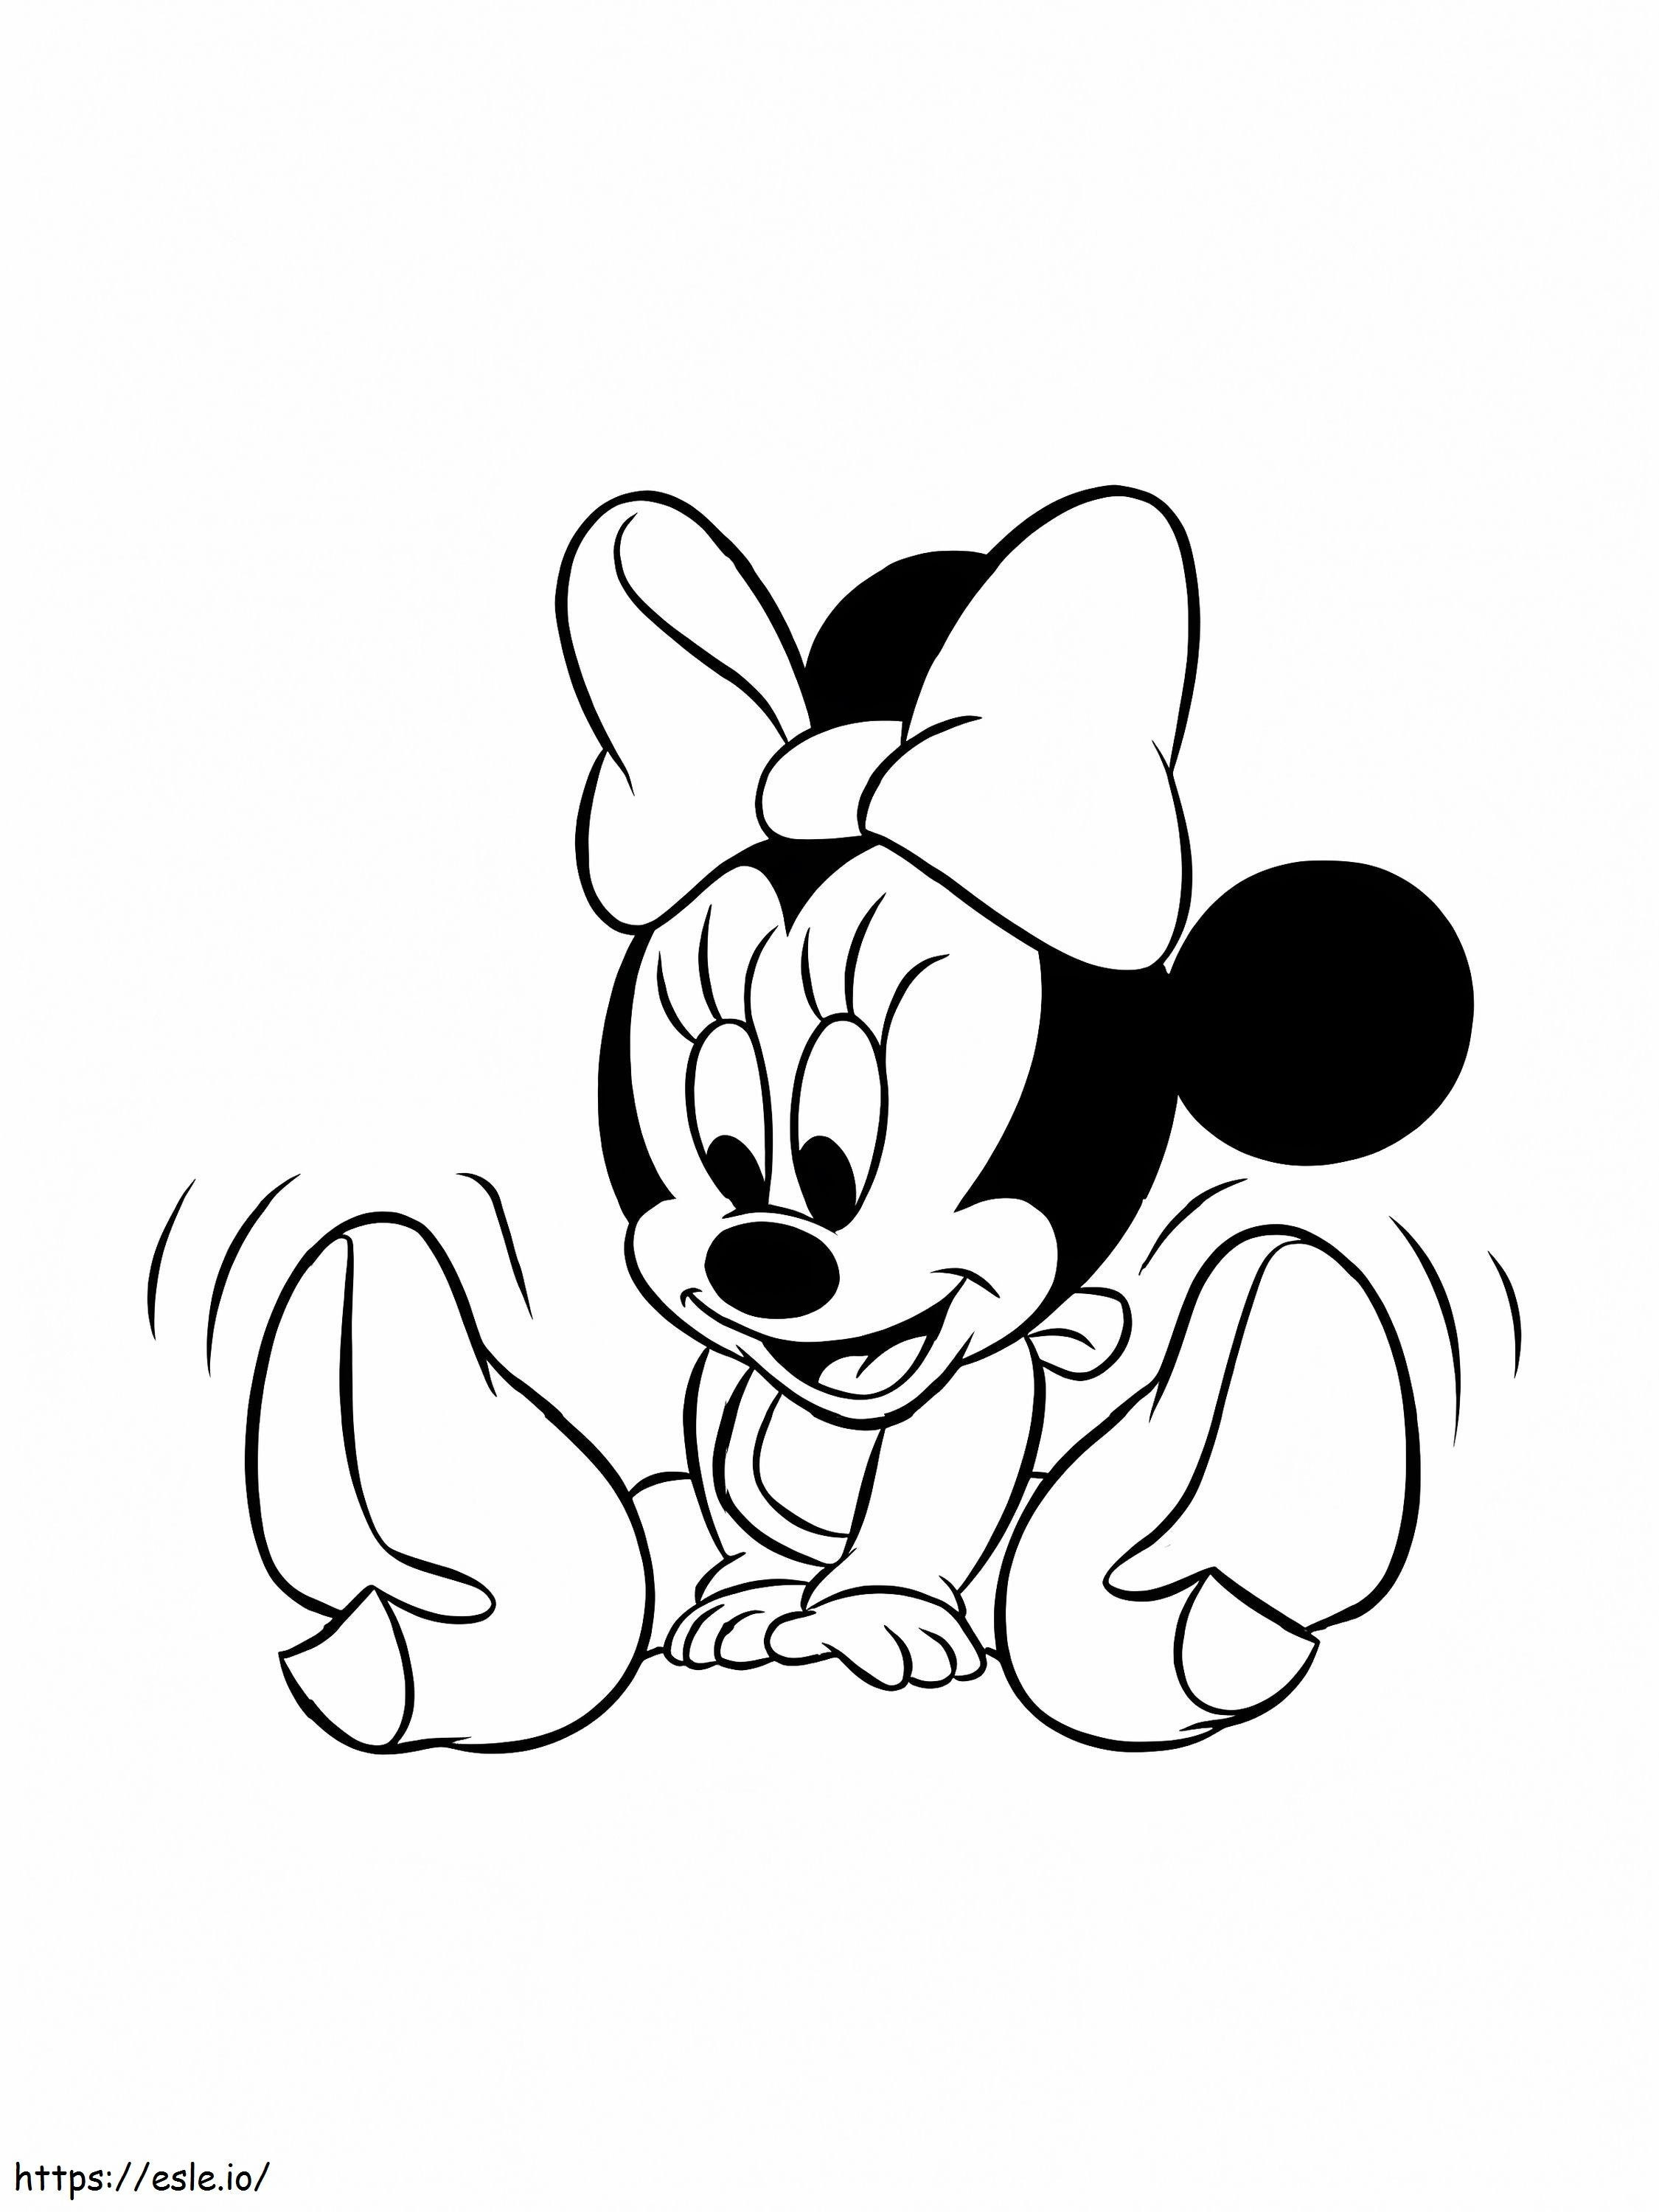 Urocza Minnie Disneya kolorowanka